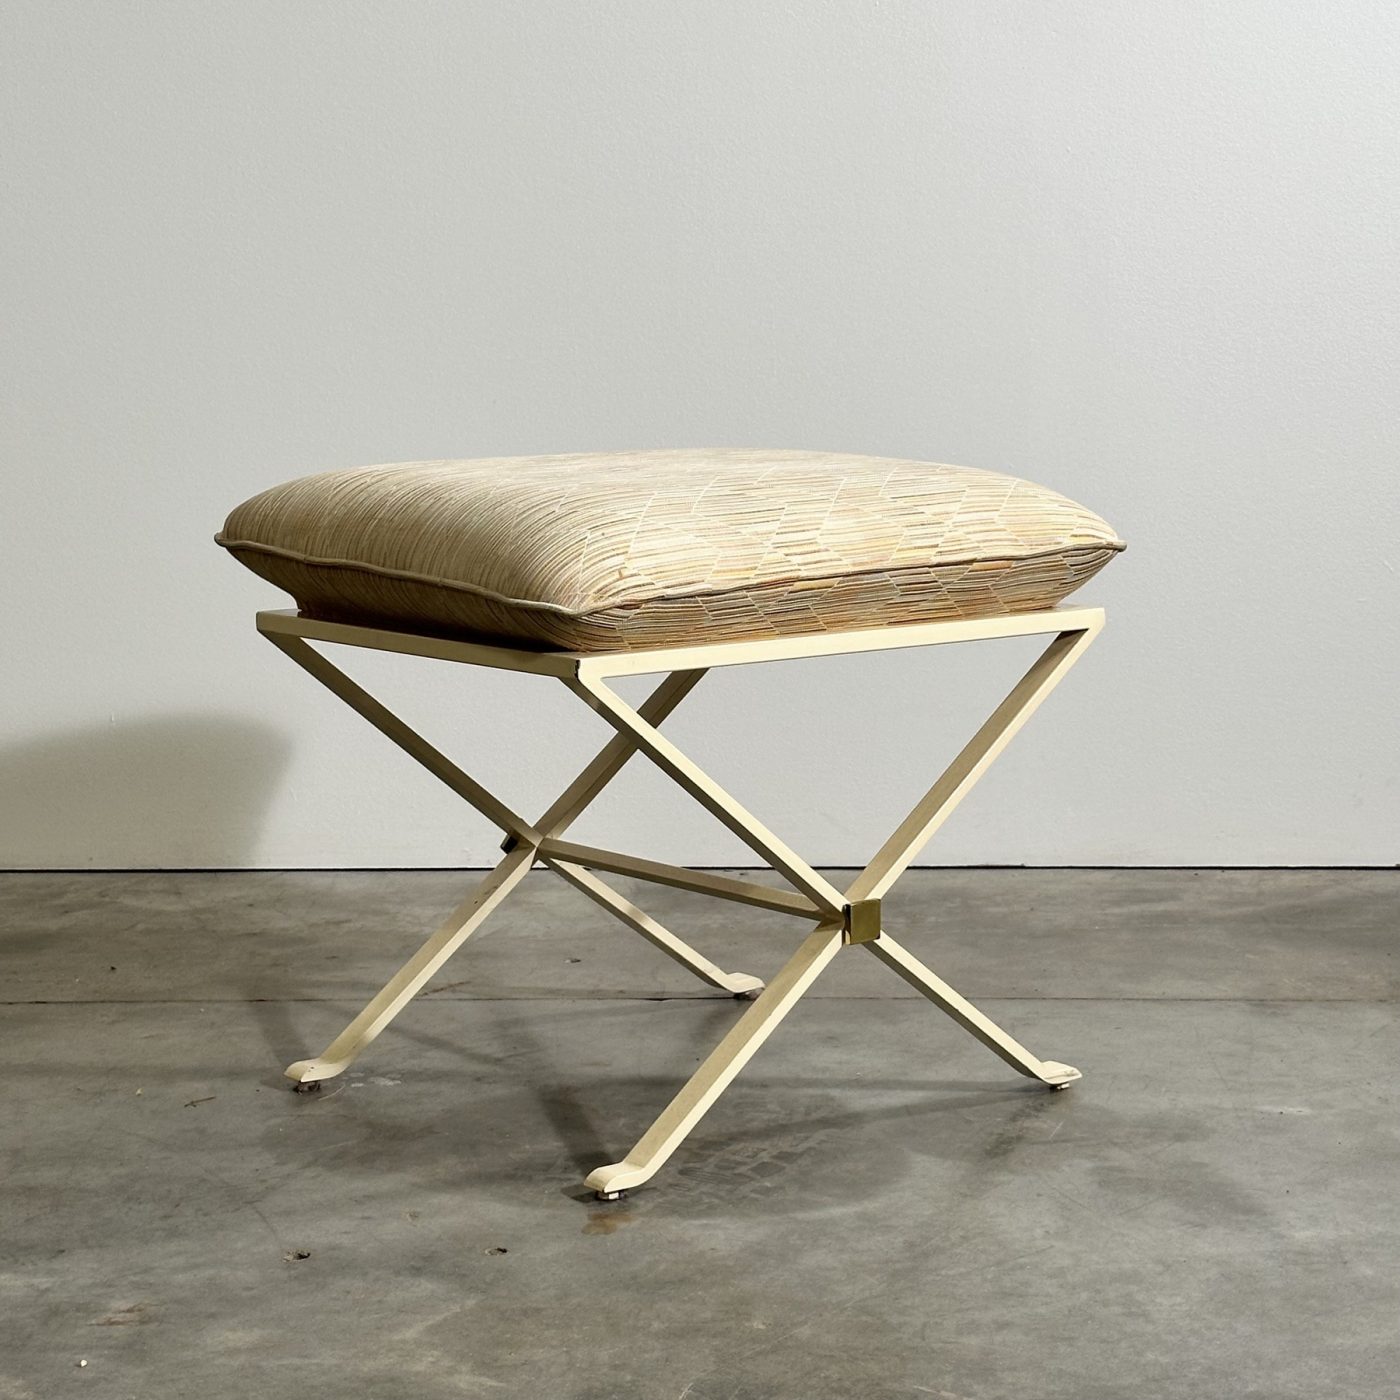 objet-vagabond-metal-stool0005